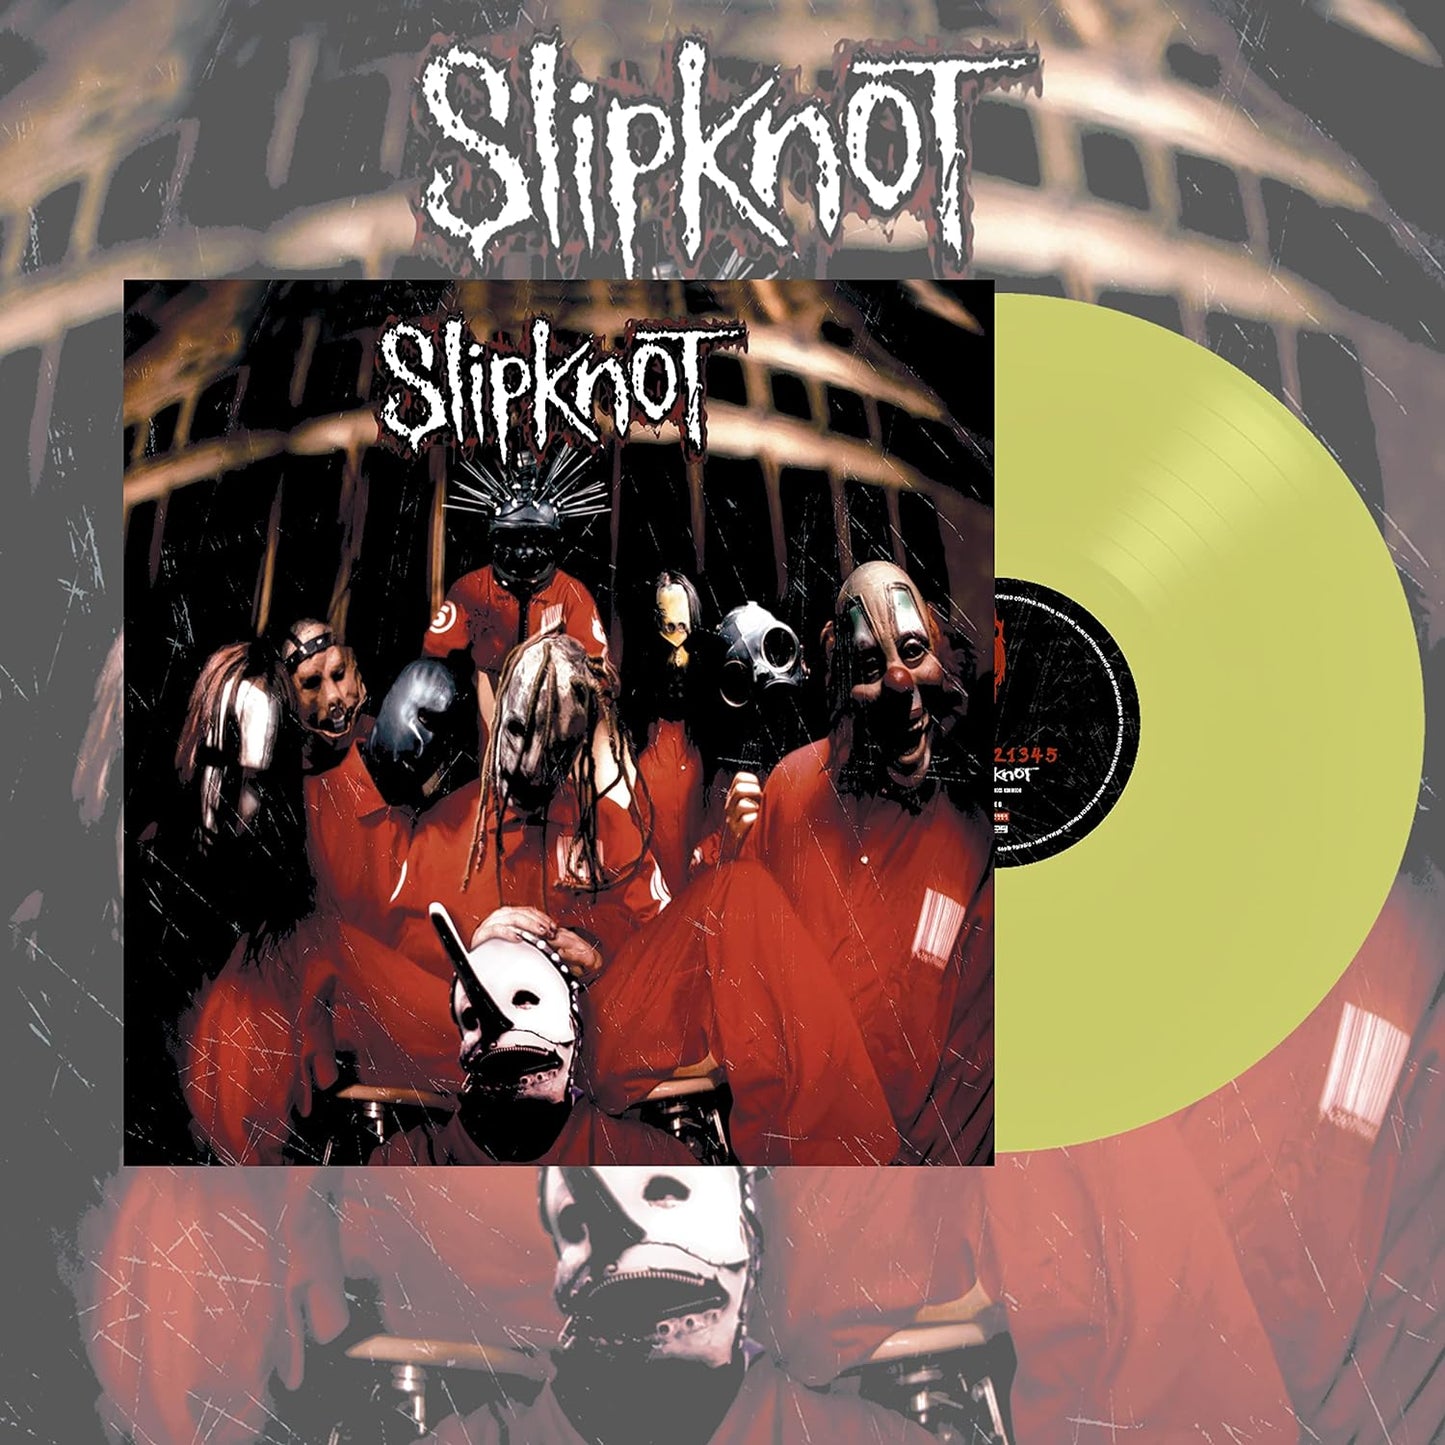 Slipknot - Limited Edition Lemon Vinyl